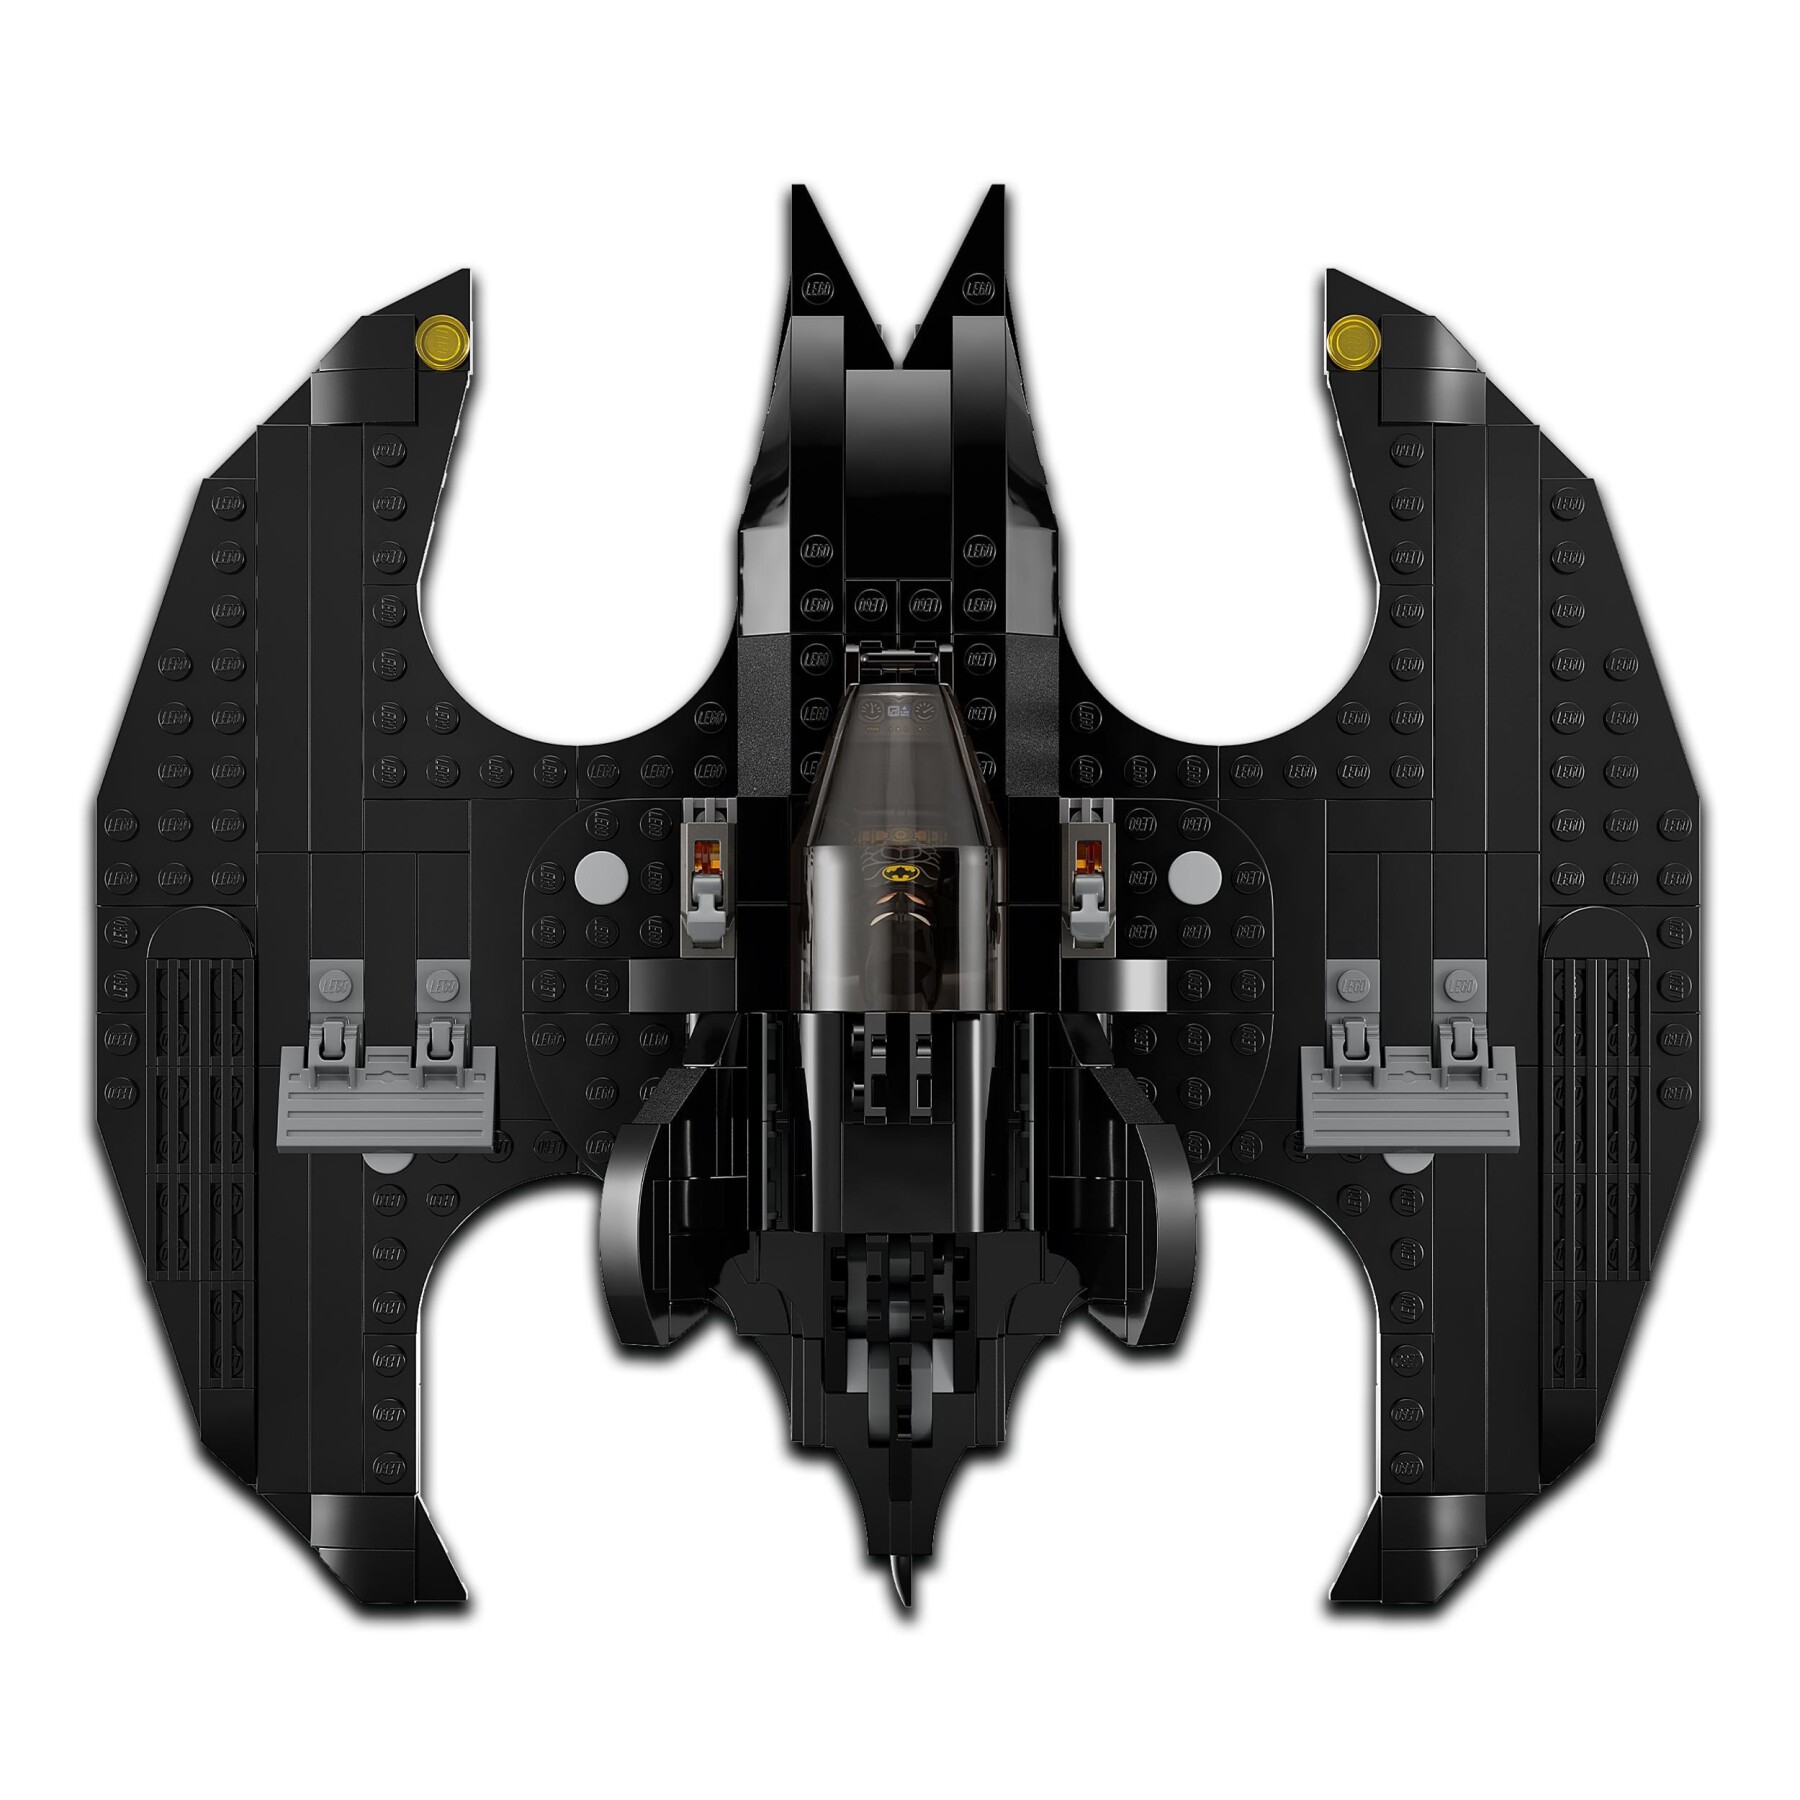 Lego dc 76265 bat-aereo: batman vs. the joker, aeroplano giocattolo dal film del 1989 con 2 minifigure - BATMAN, LEGO SUPER HEROES